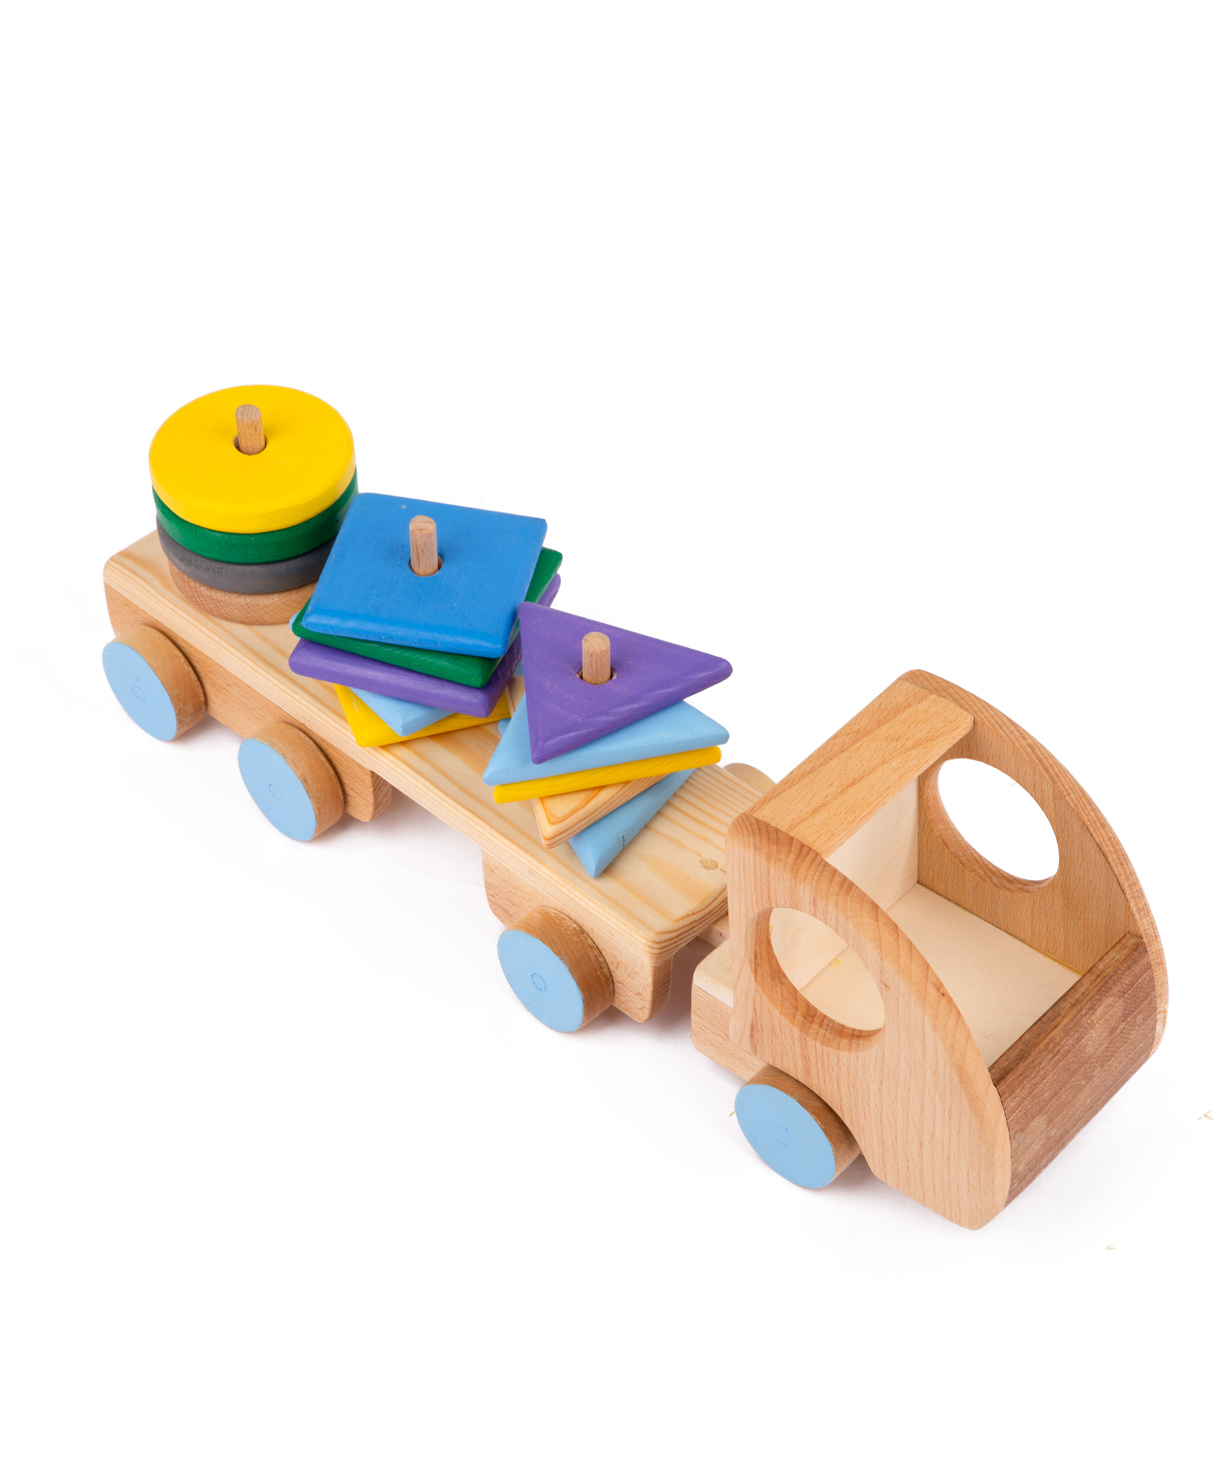 Խաղալիք «Im wooden toys» մեքենա, փայտե №8